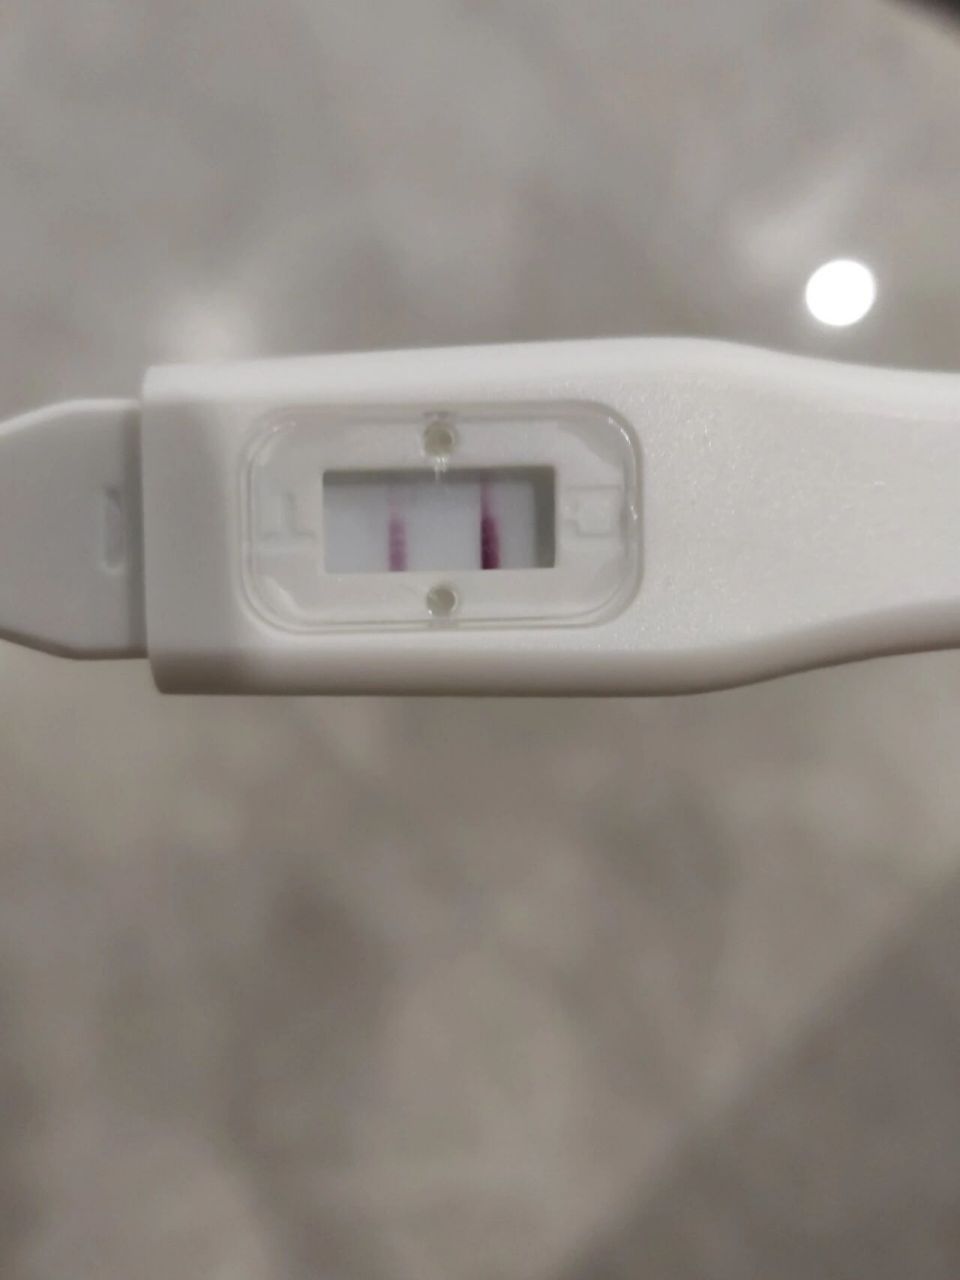 假阳性怀孕 人生第一次使用验孕棒!